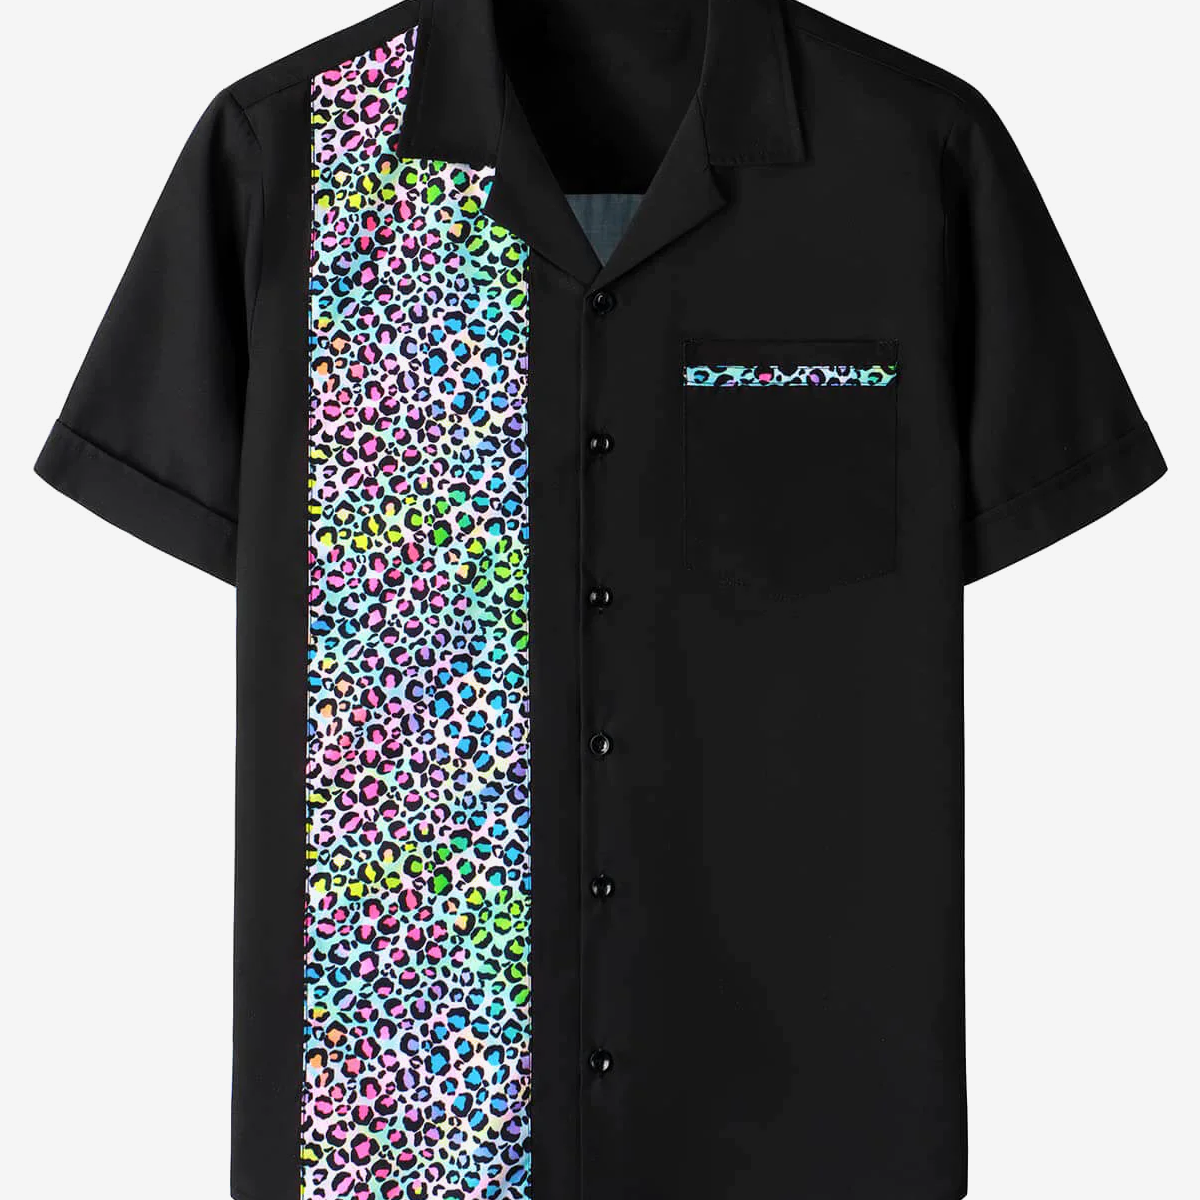 Camisa de manga corta de verano con botones y estampado de leopardo de los años 50 para hombre